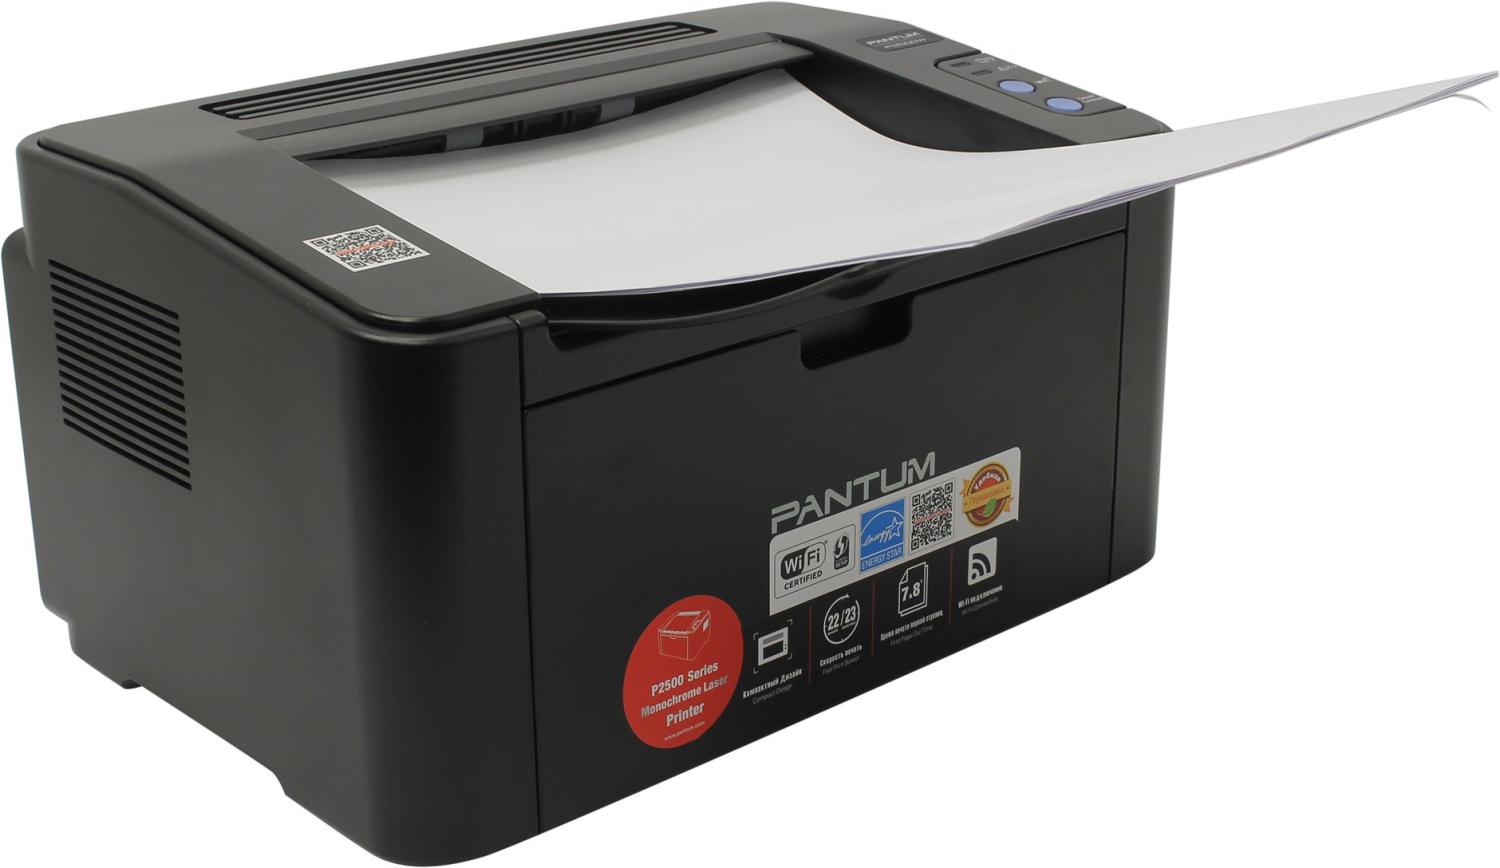 Принтер лазерный Pantum P2500W (A4, 128Mb, 22 стр / мин,1200*1200dpi, Wi-Fi,USB 2.0,PC-211EV) черный